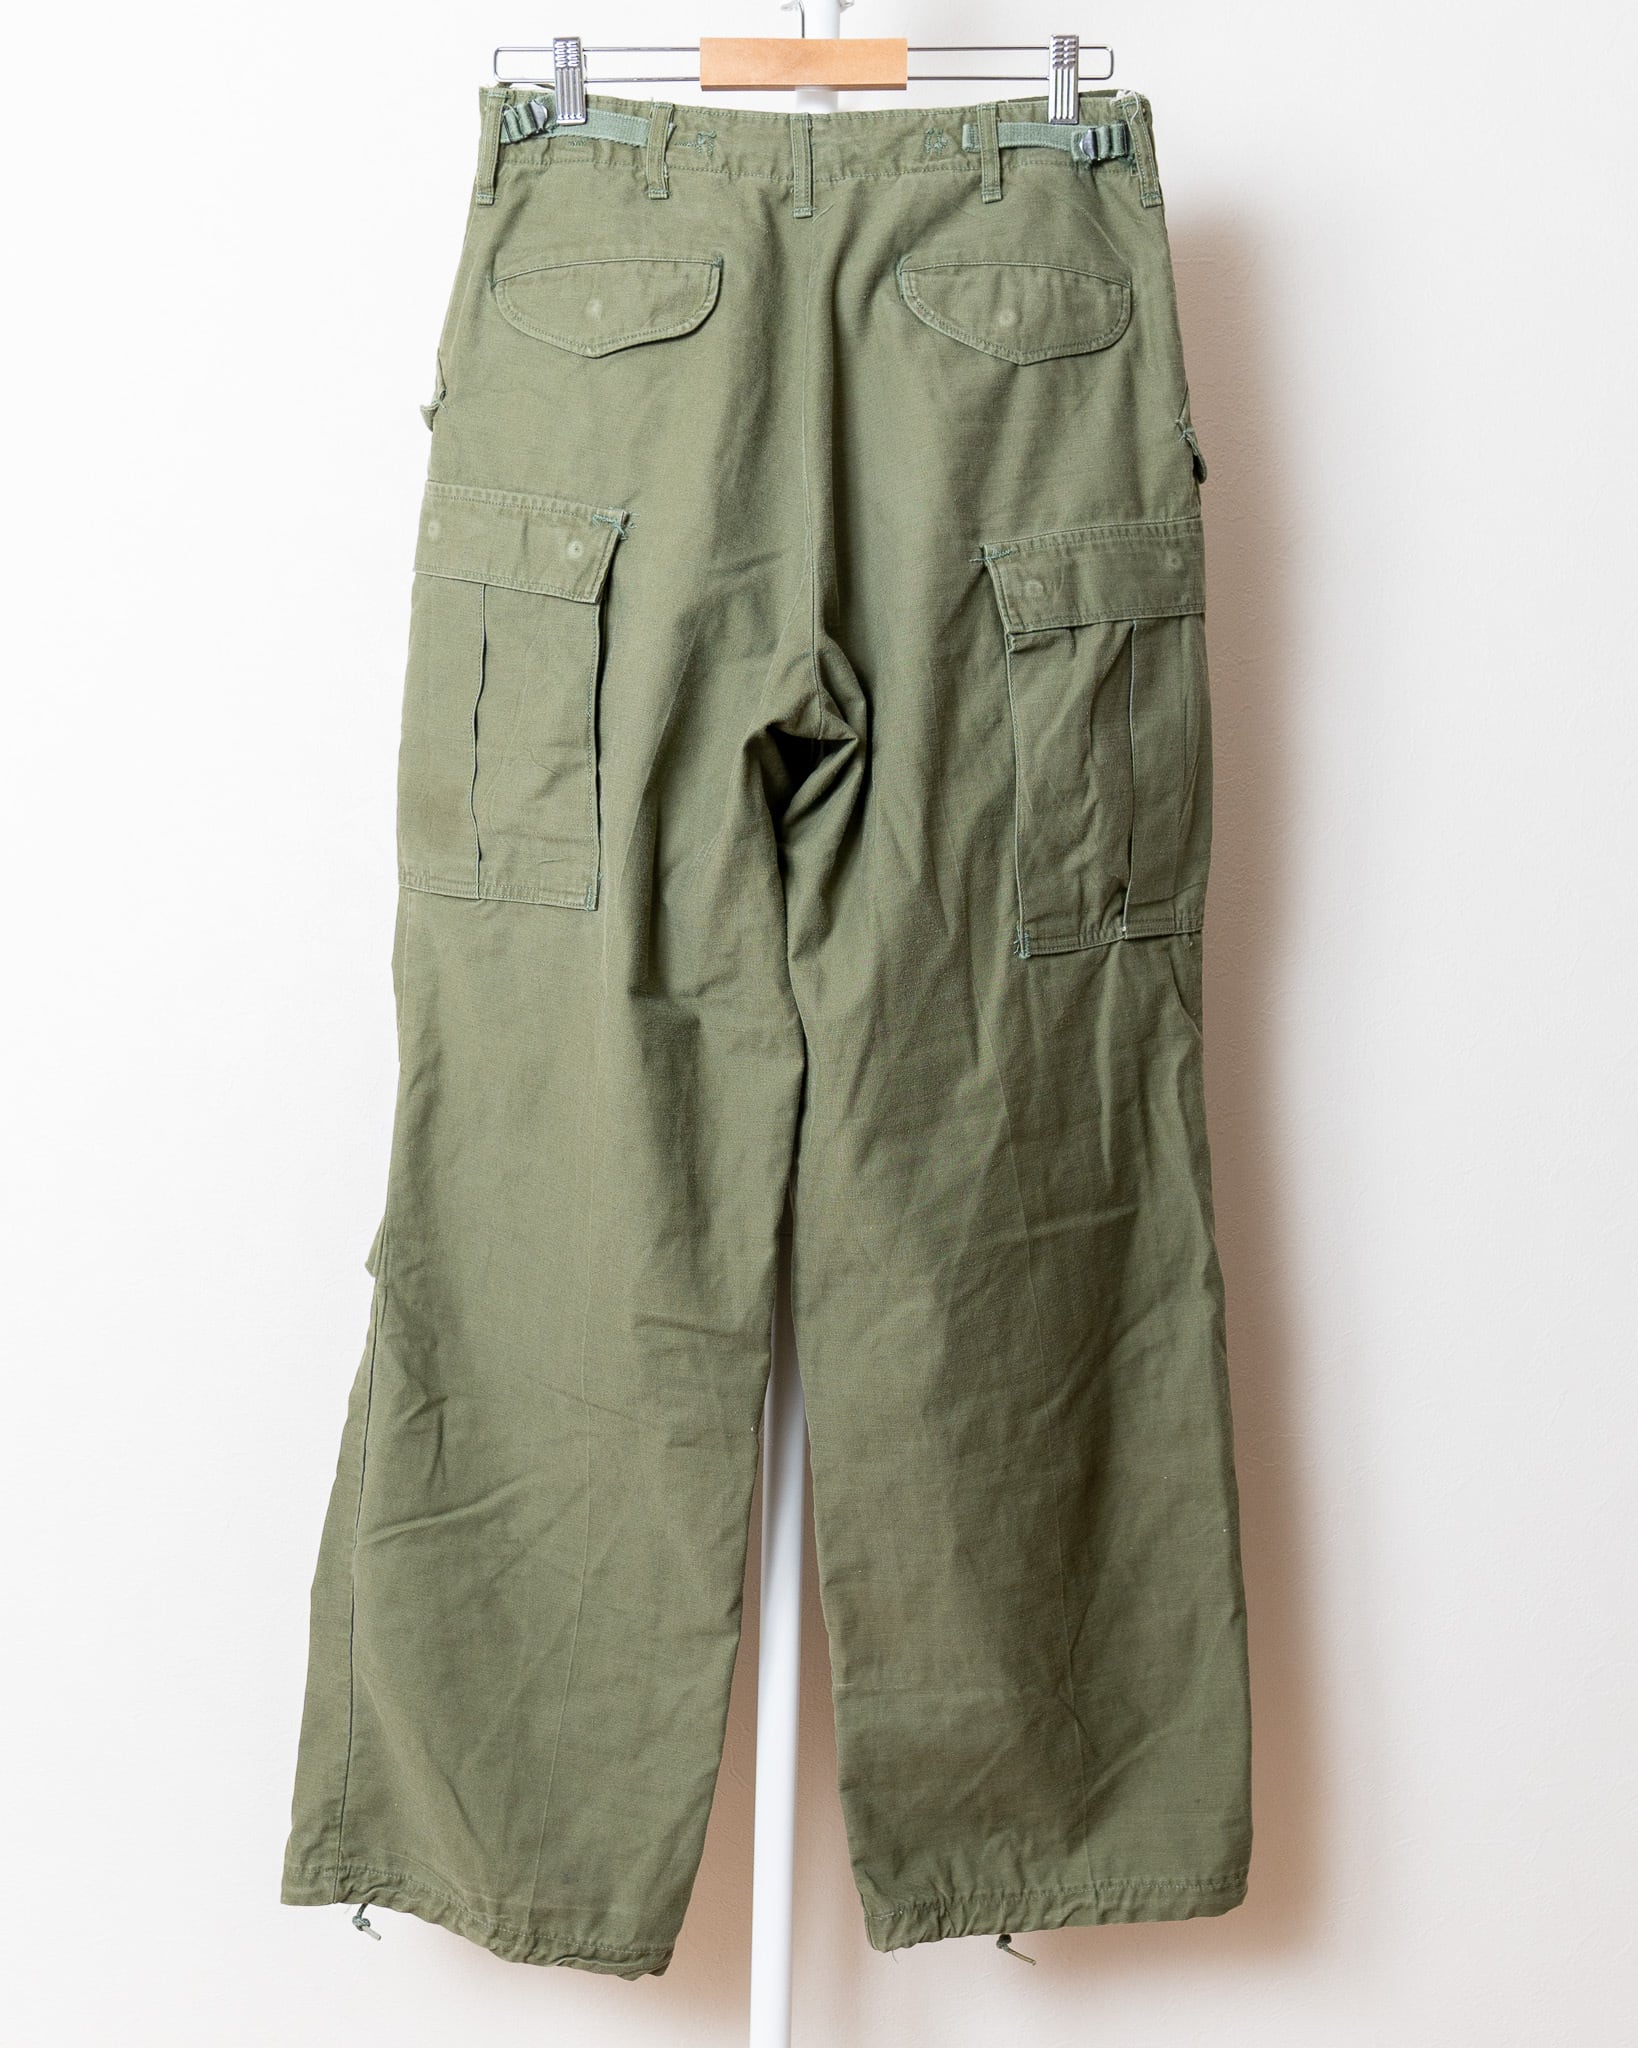 【S-L】U.S.Army M-65 Field Trousers Aluminum Zipper 